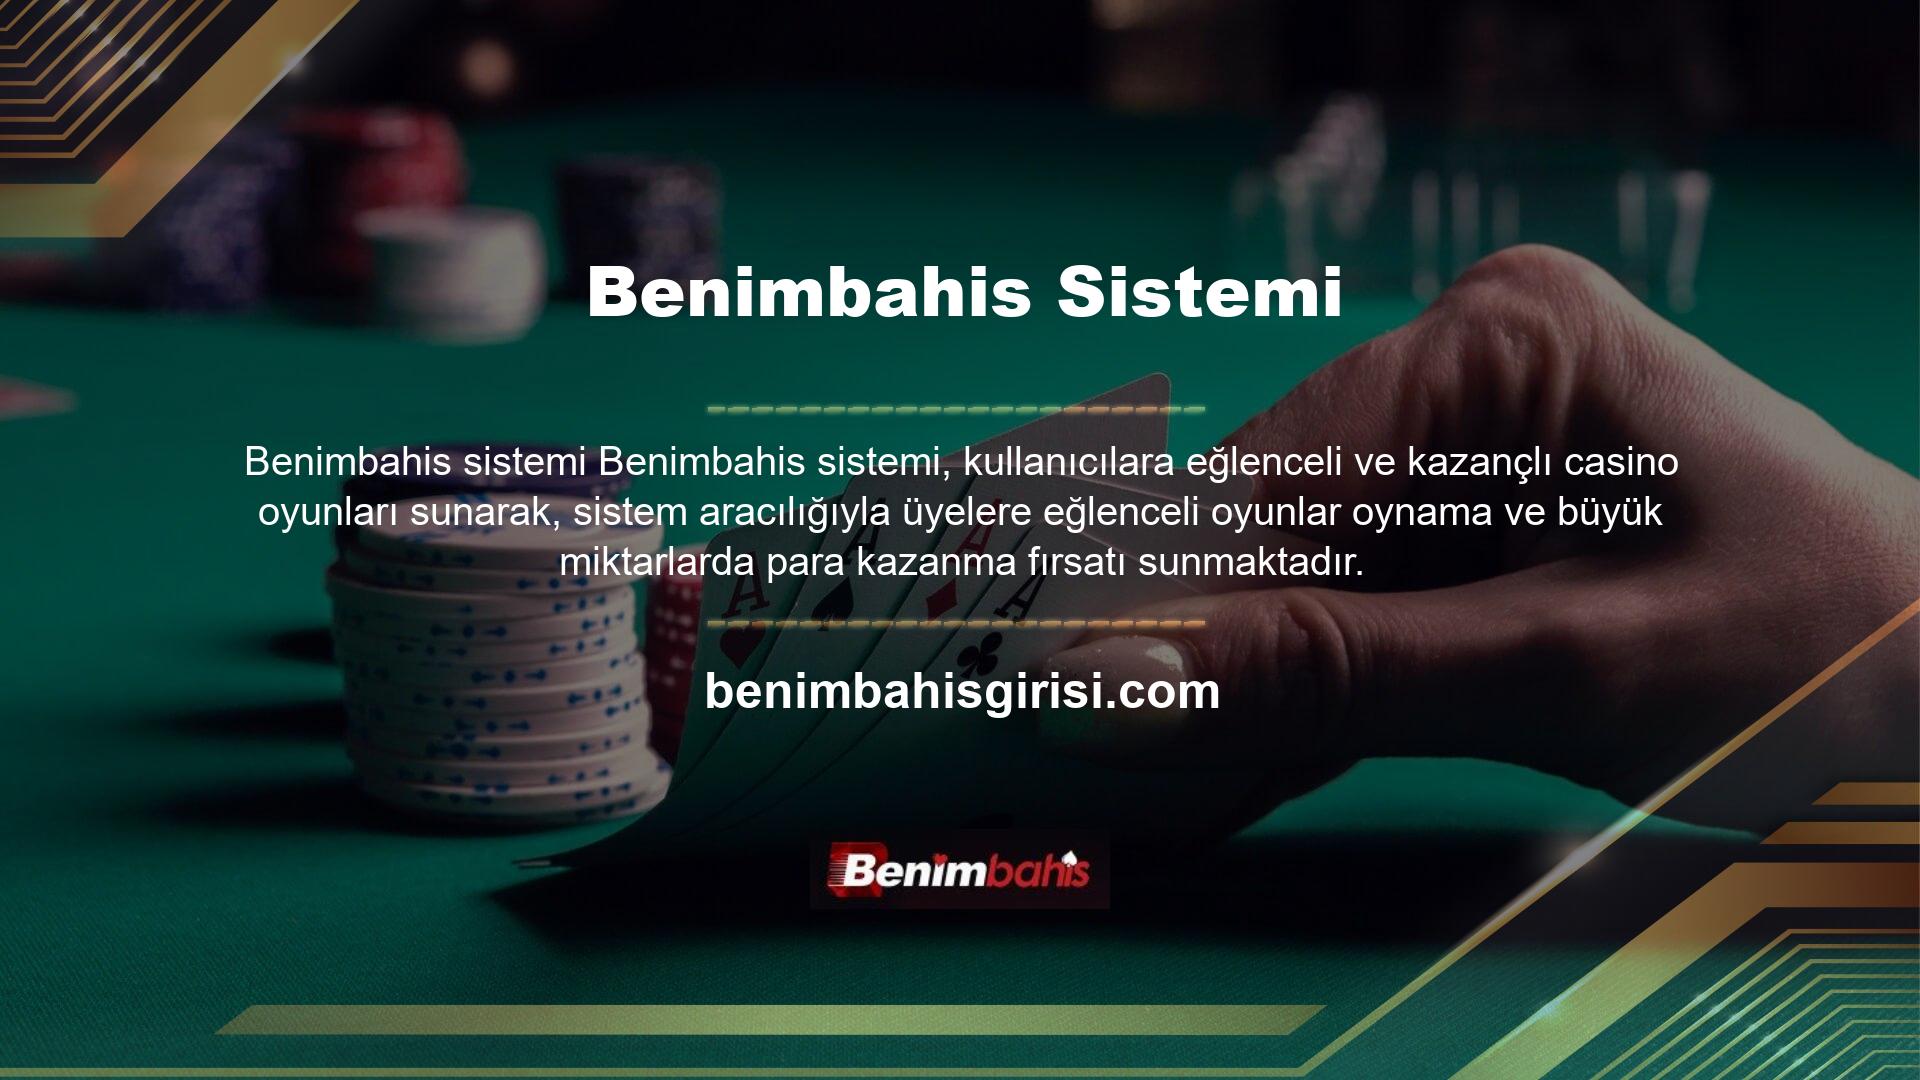 Benimbahis Casino platformu üzerinden üyeler slot, poker, rulet, blackjack, bingo ve Türk pokeri gibi birçok farklı oyunu oynayabilmektedir